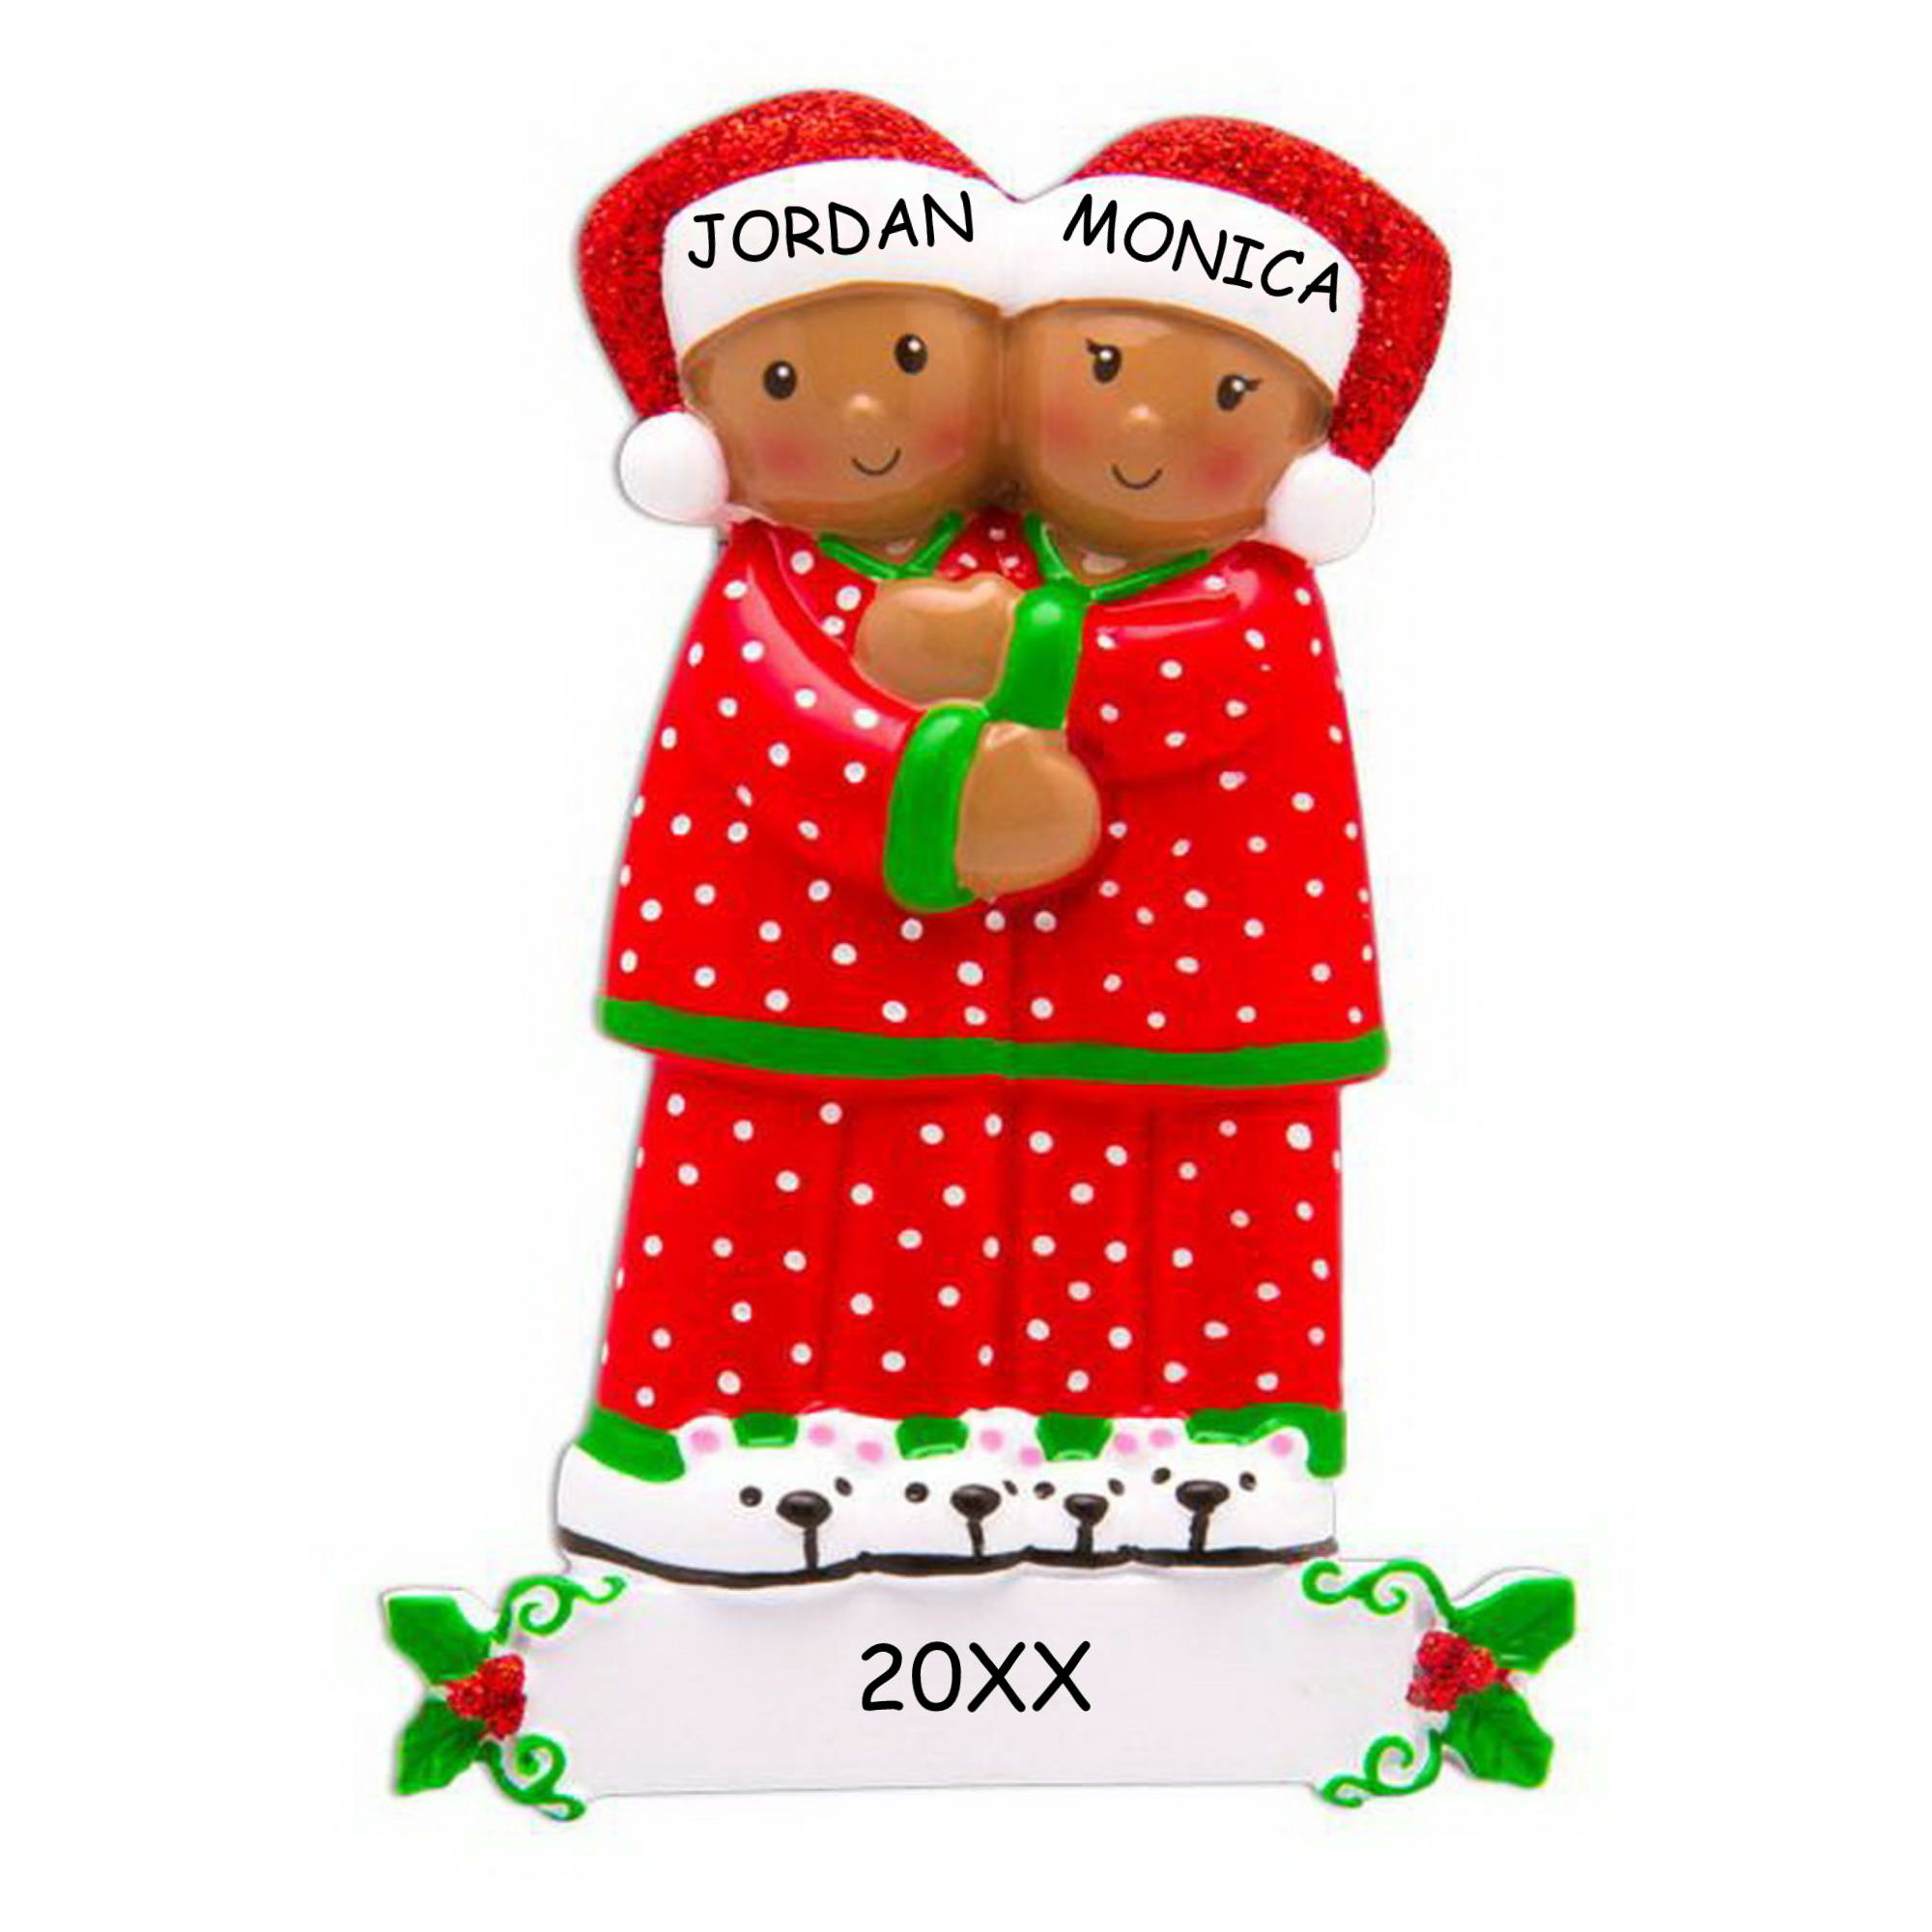 Personalized Cozy Pajamas Couples Christmas Ornament - Dark Skin Tone